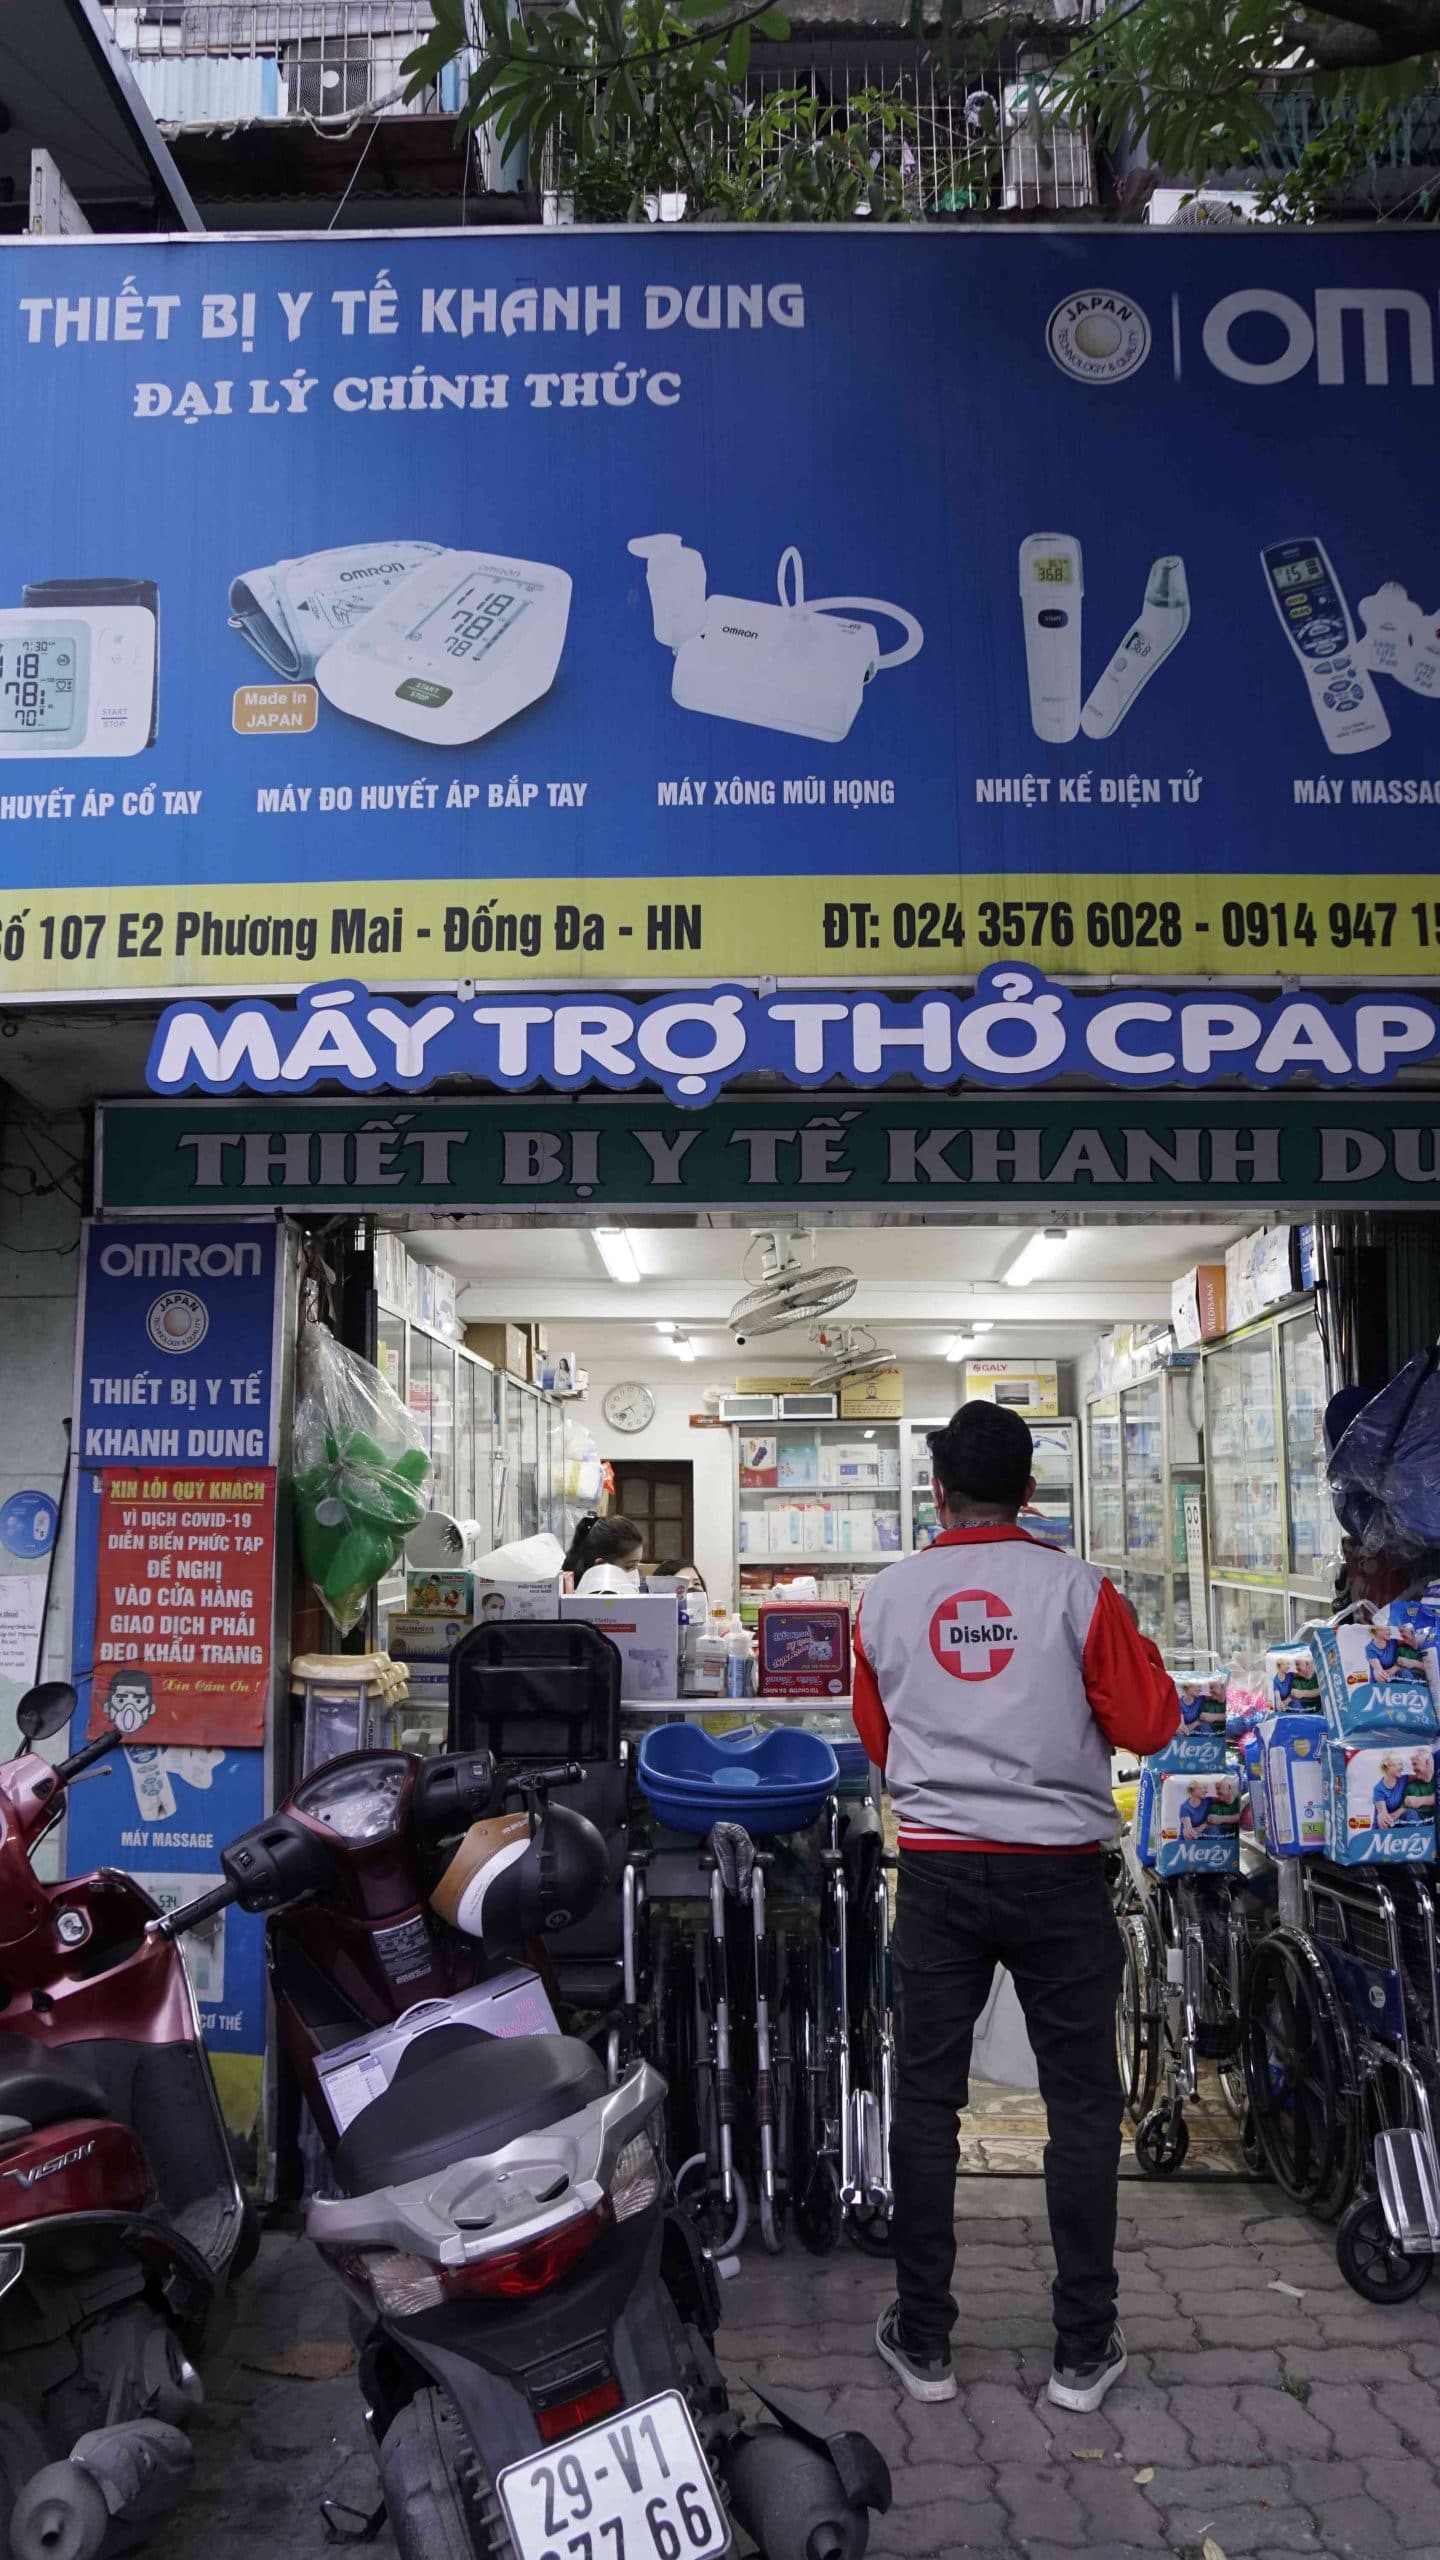 Cửa hàng thiết bị y tế Khanh Dung